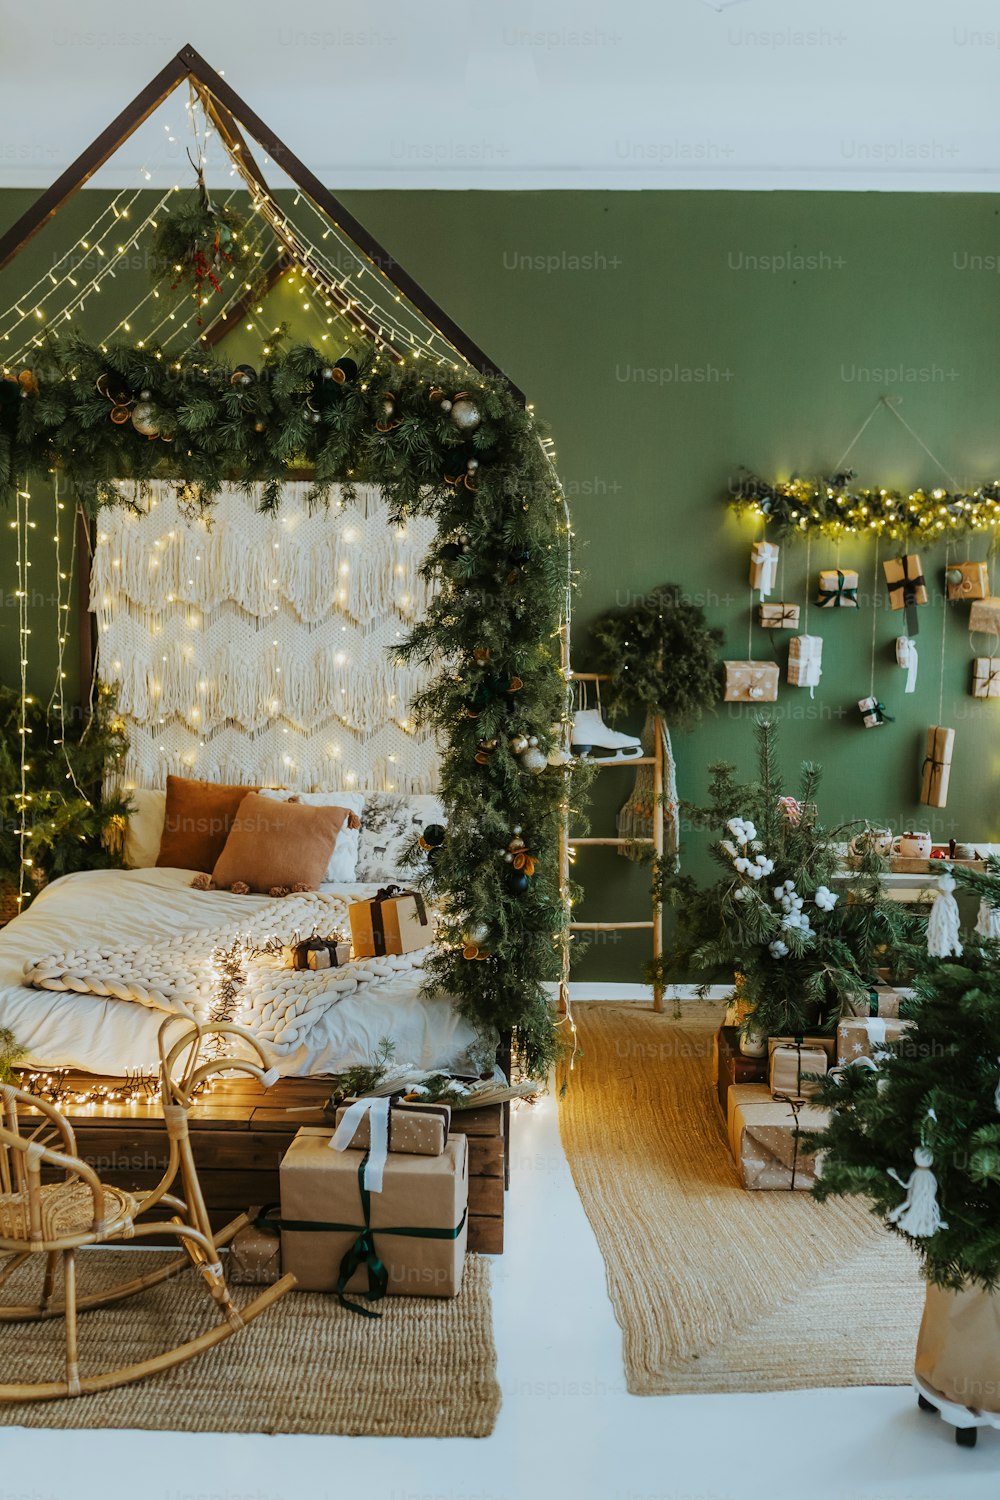 Une chambre décorée pour Noël avec des lumières et des cadeaux